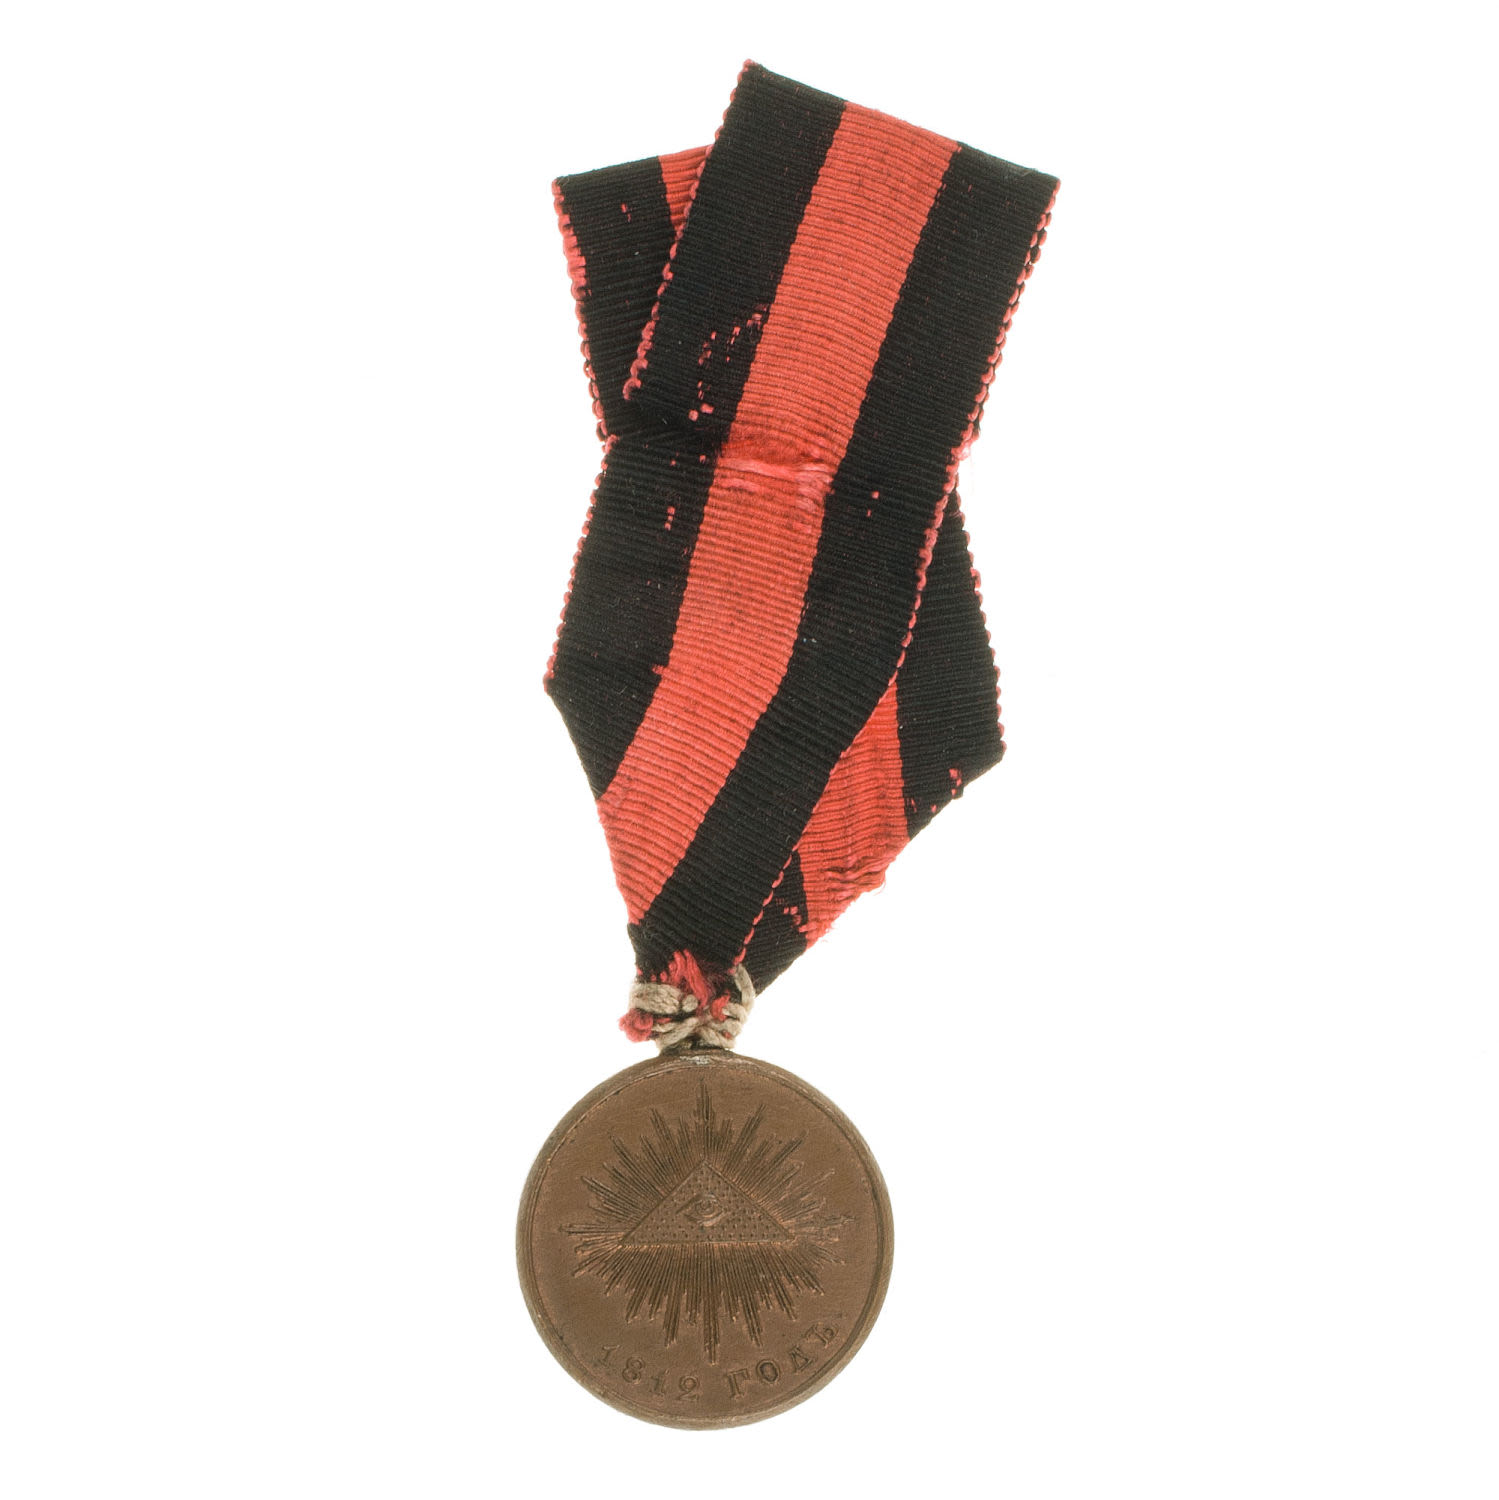 Медаль "В память Отечественной войны 1812 г" на ленте. Частник.